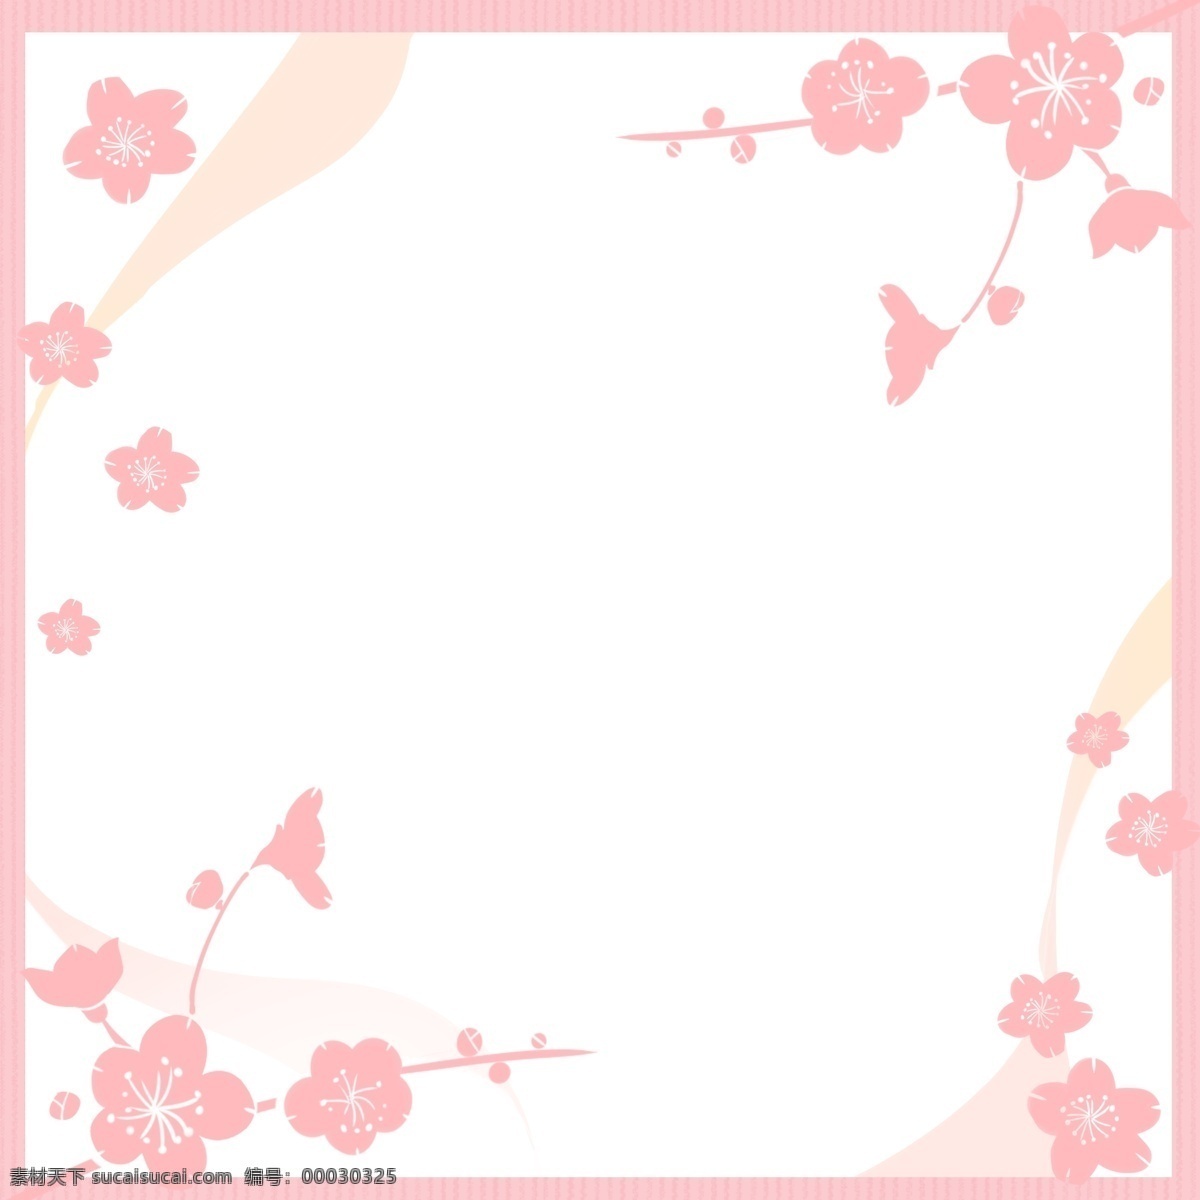 妇女节 樱花 边框 三八妇女节 创意樱花边框 妇女节边框 粉色系边框 简约边框 粉色 扁平风边框